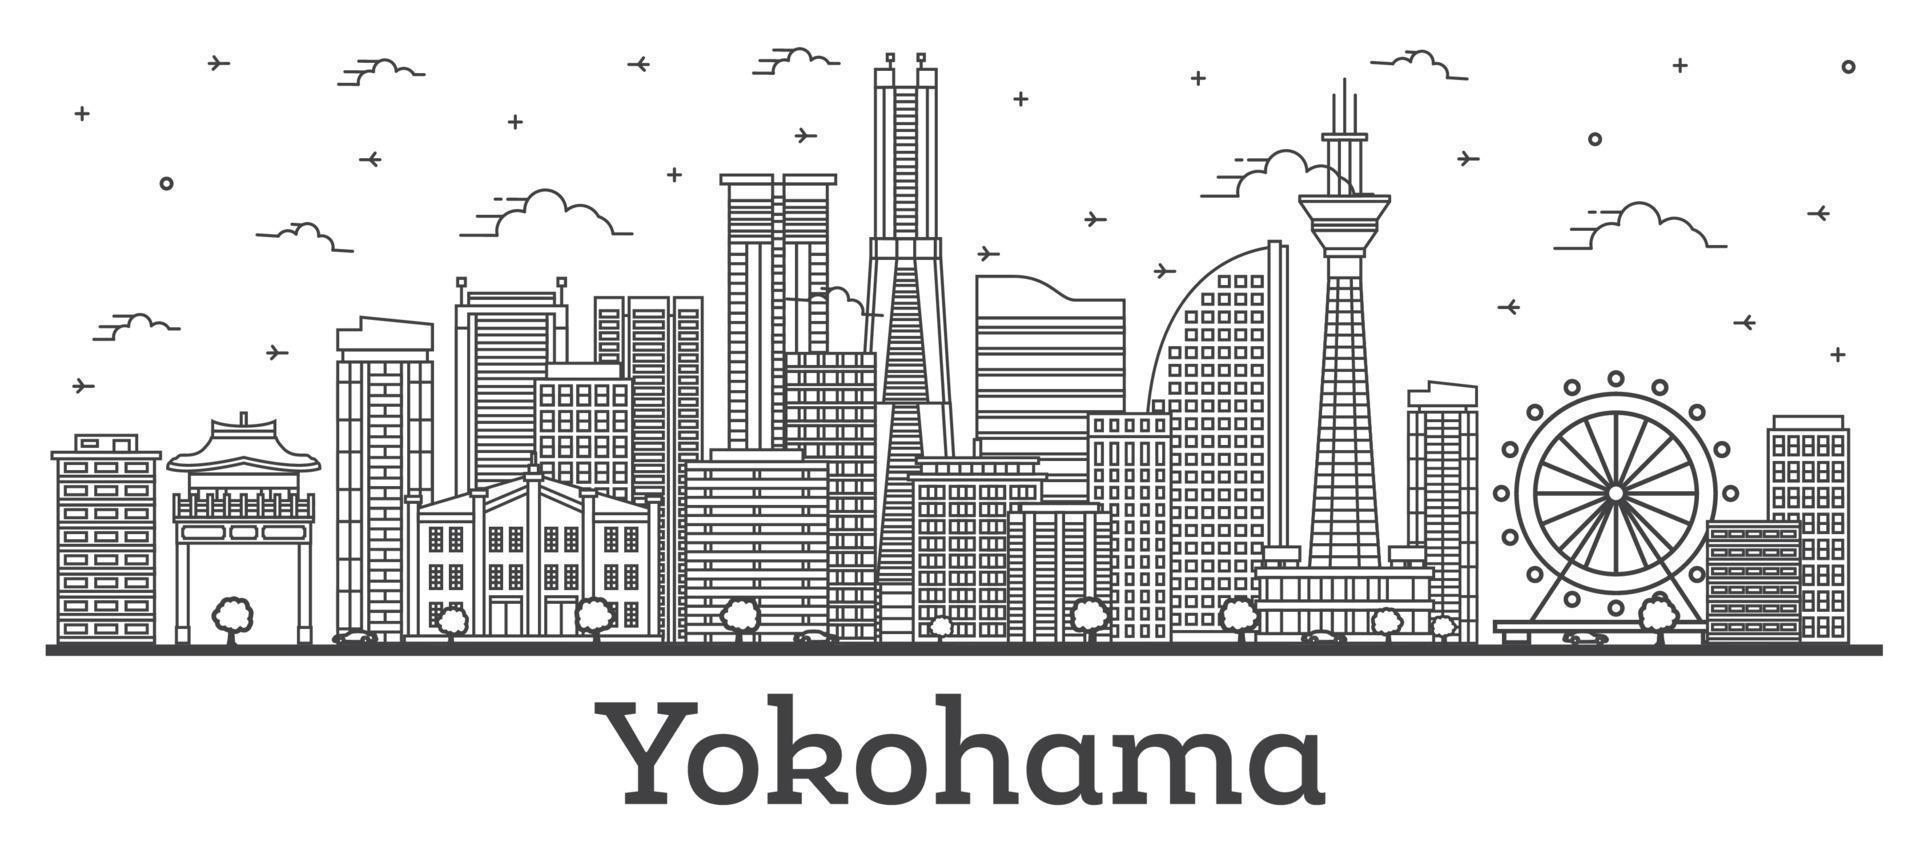 delinear el horizonte de la ciudad de yokohama japón con edificios modernos aislados en blanco. vector